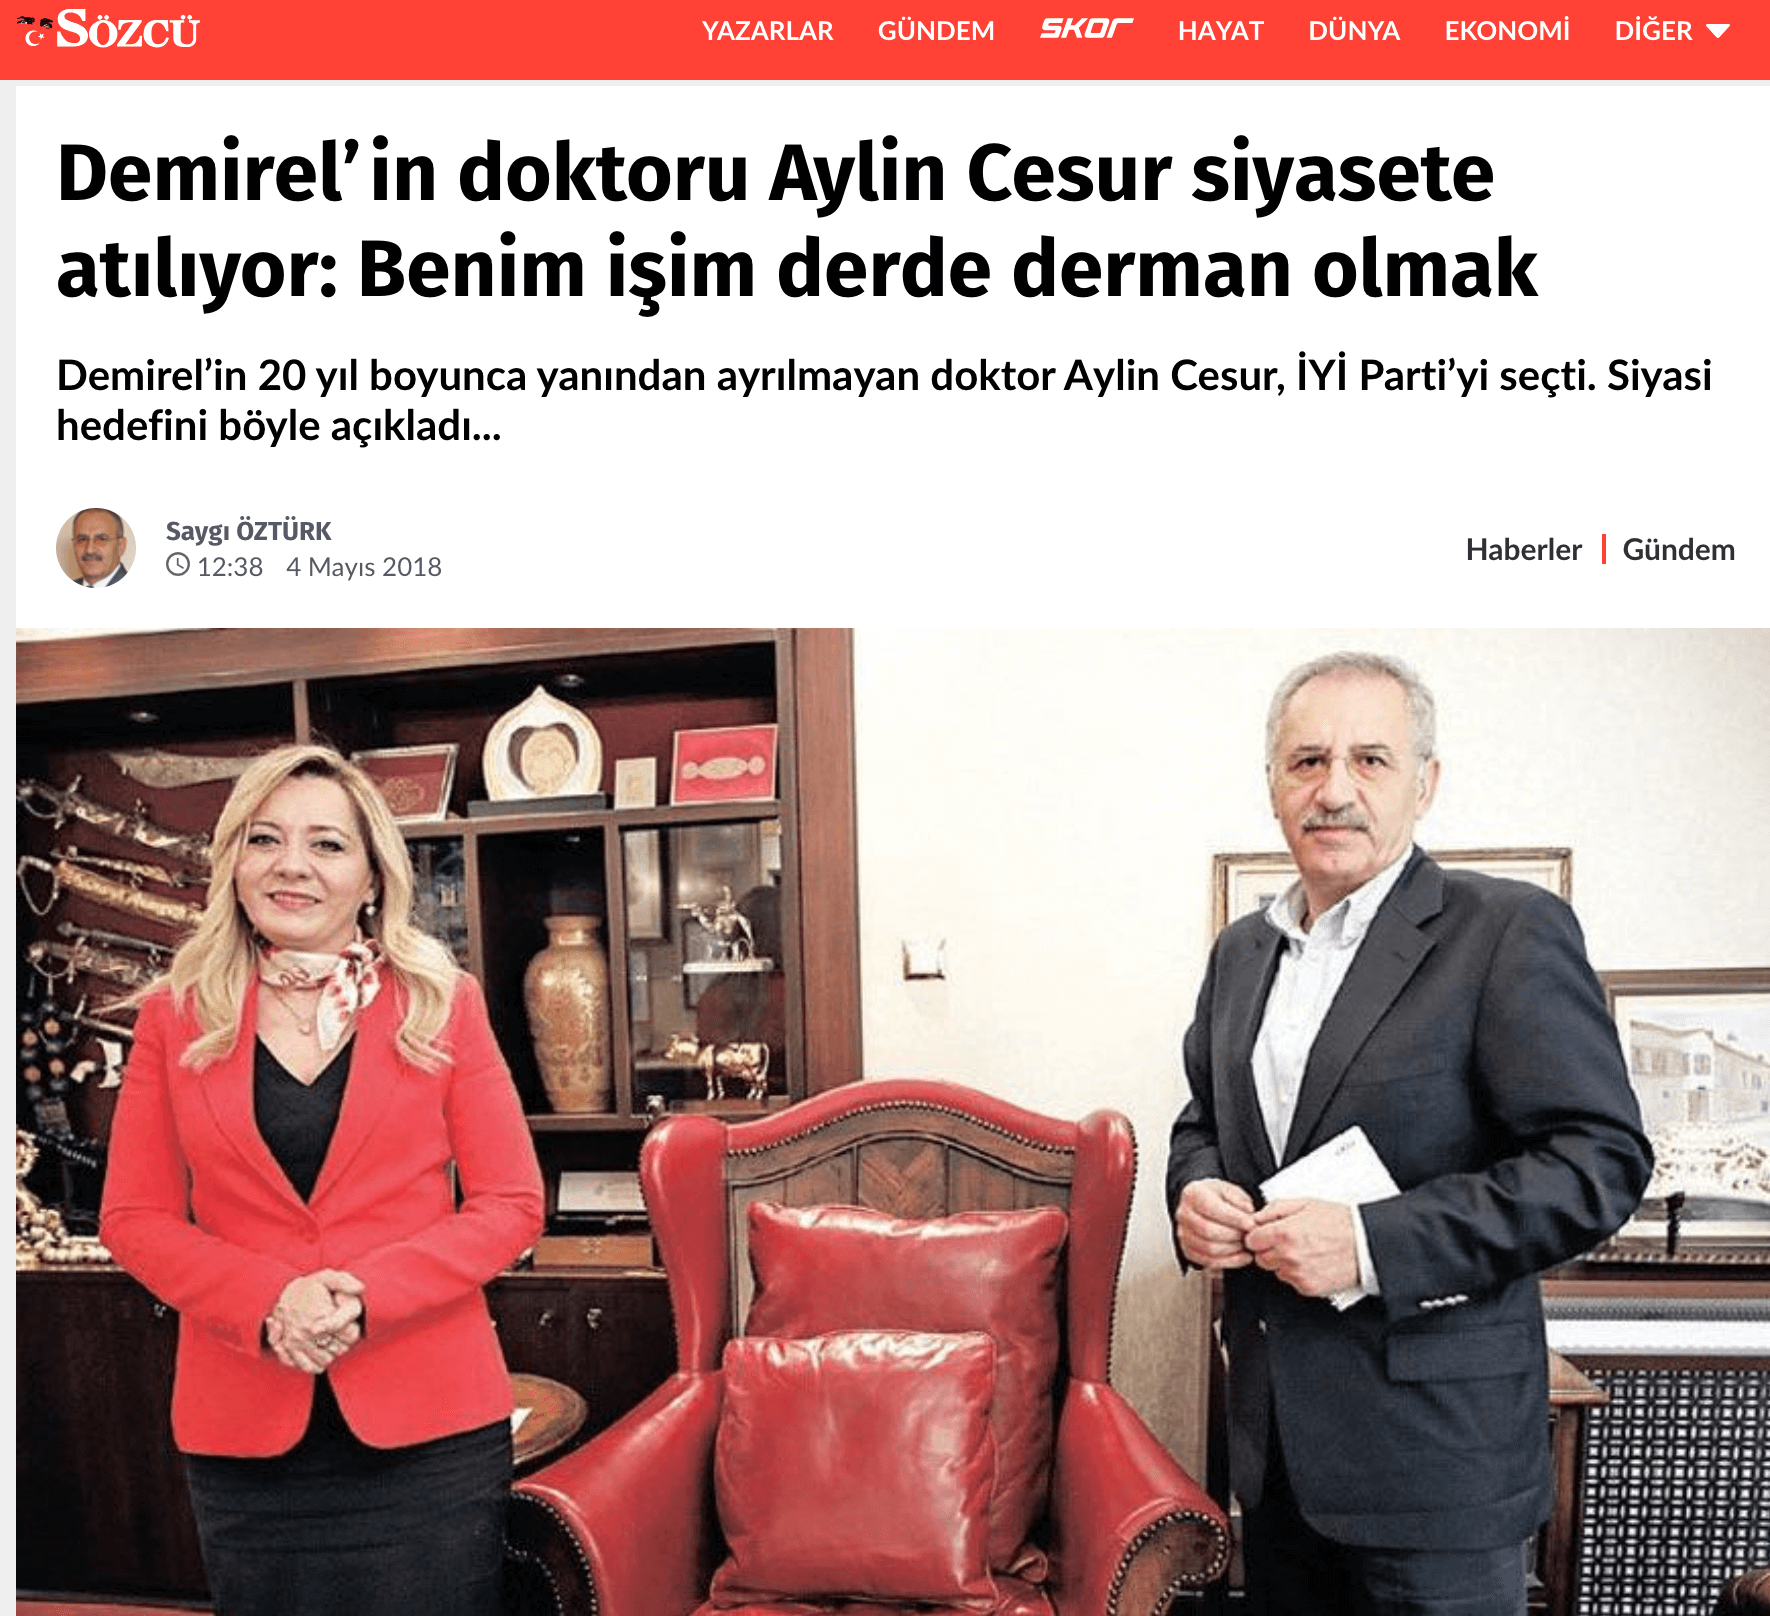 Demirel’in doktoru Aylin Cesur siyasete atılıyor: Benim işim derde derman olmak